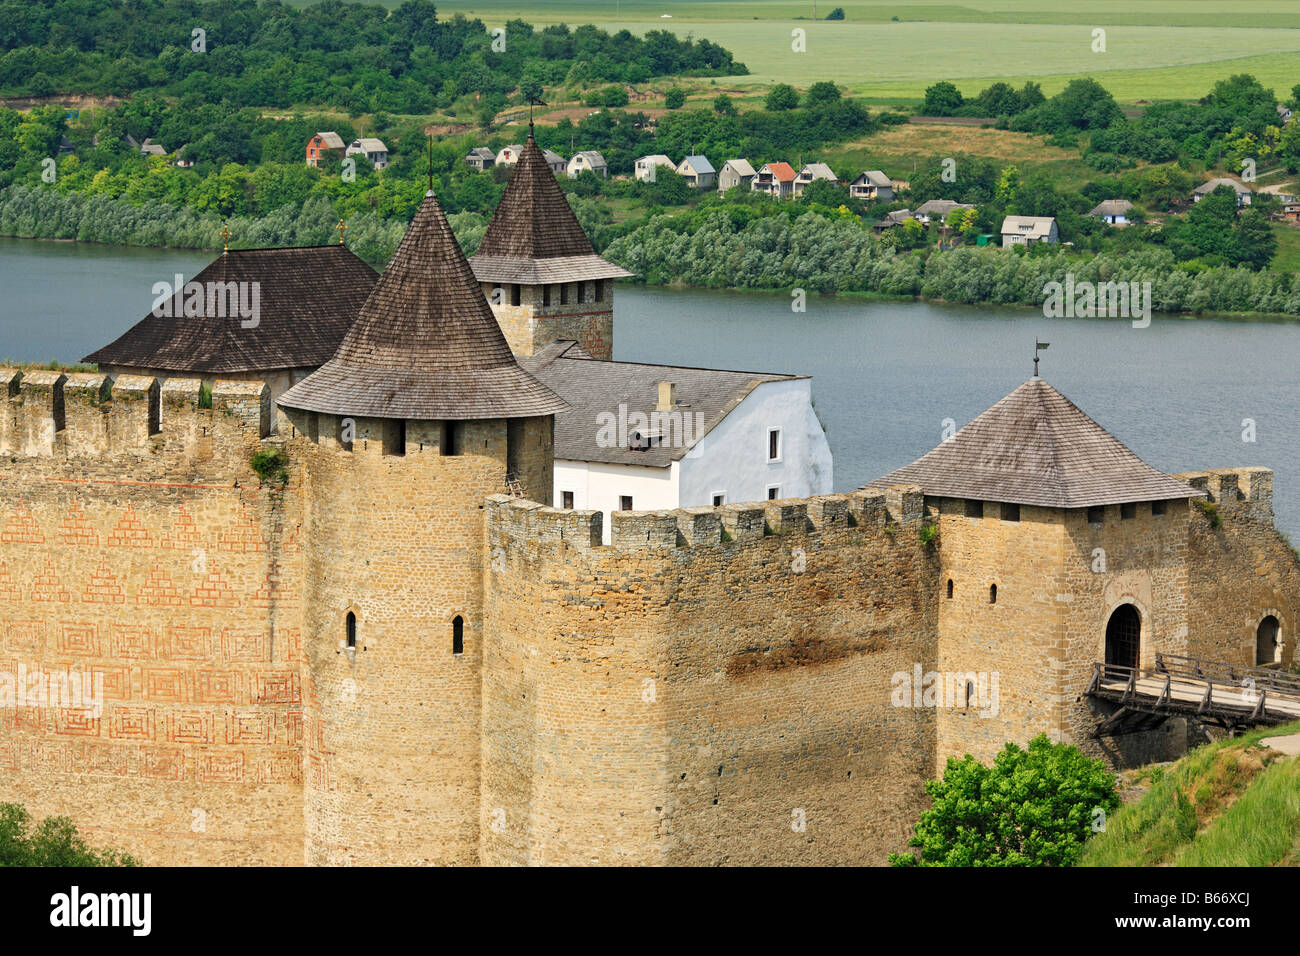 Le mura e le torri della fortezza Khotyn (1325-1460), il castello medievale, Dniester river, Podolia, Oblast di Chernivtsi (provincia), Ucraina Foto Stock